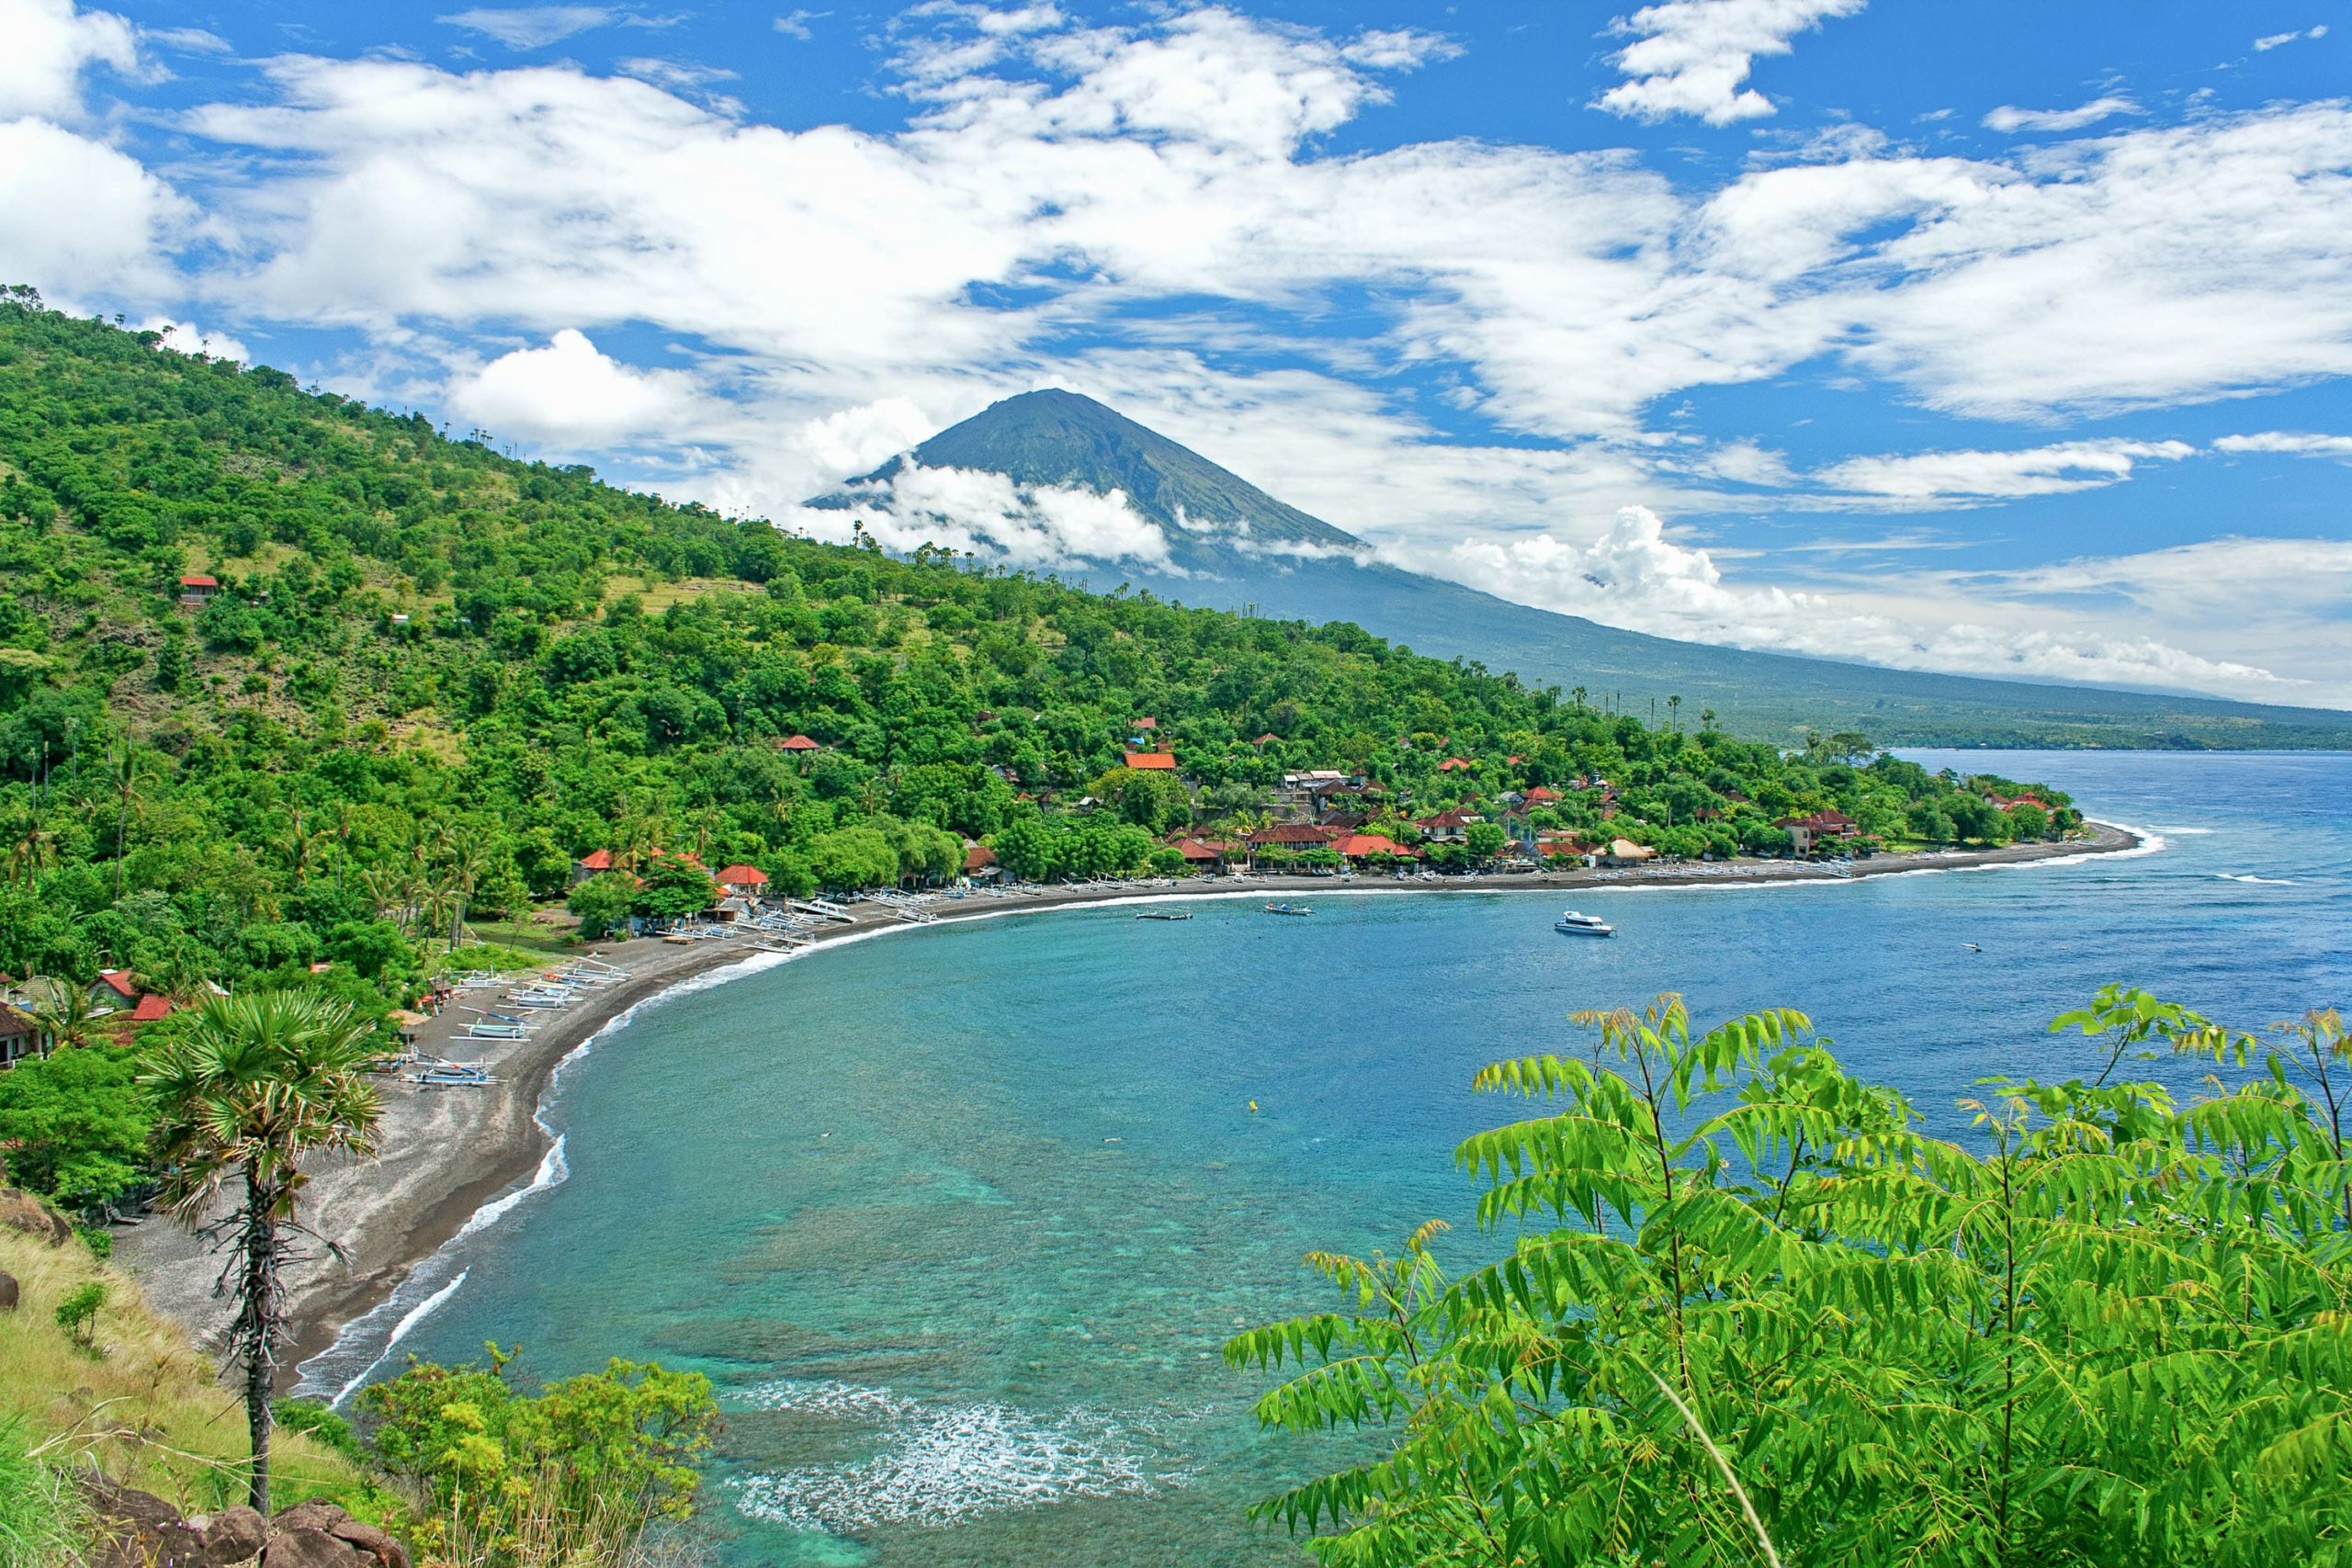 Bali coastal scene